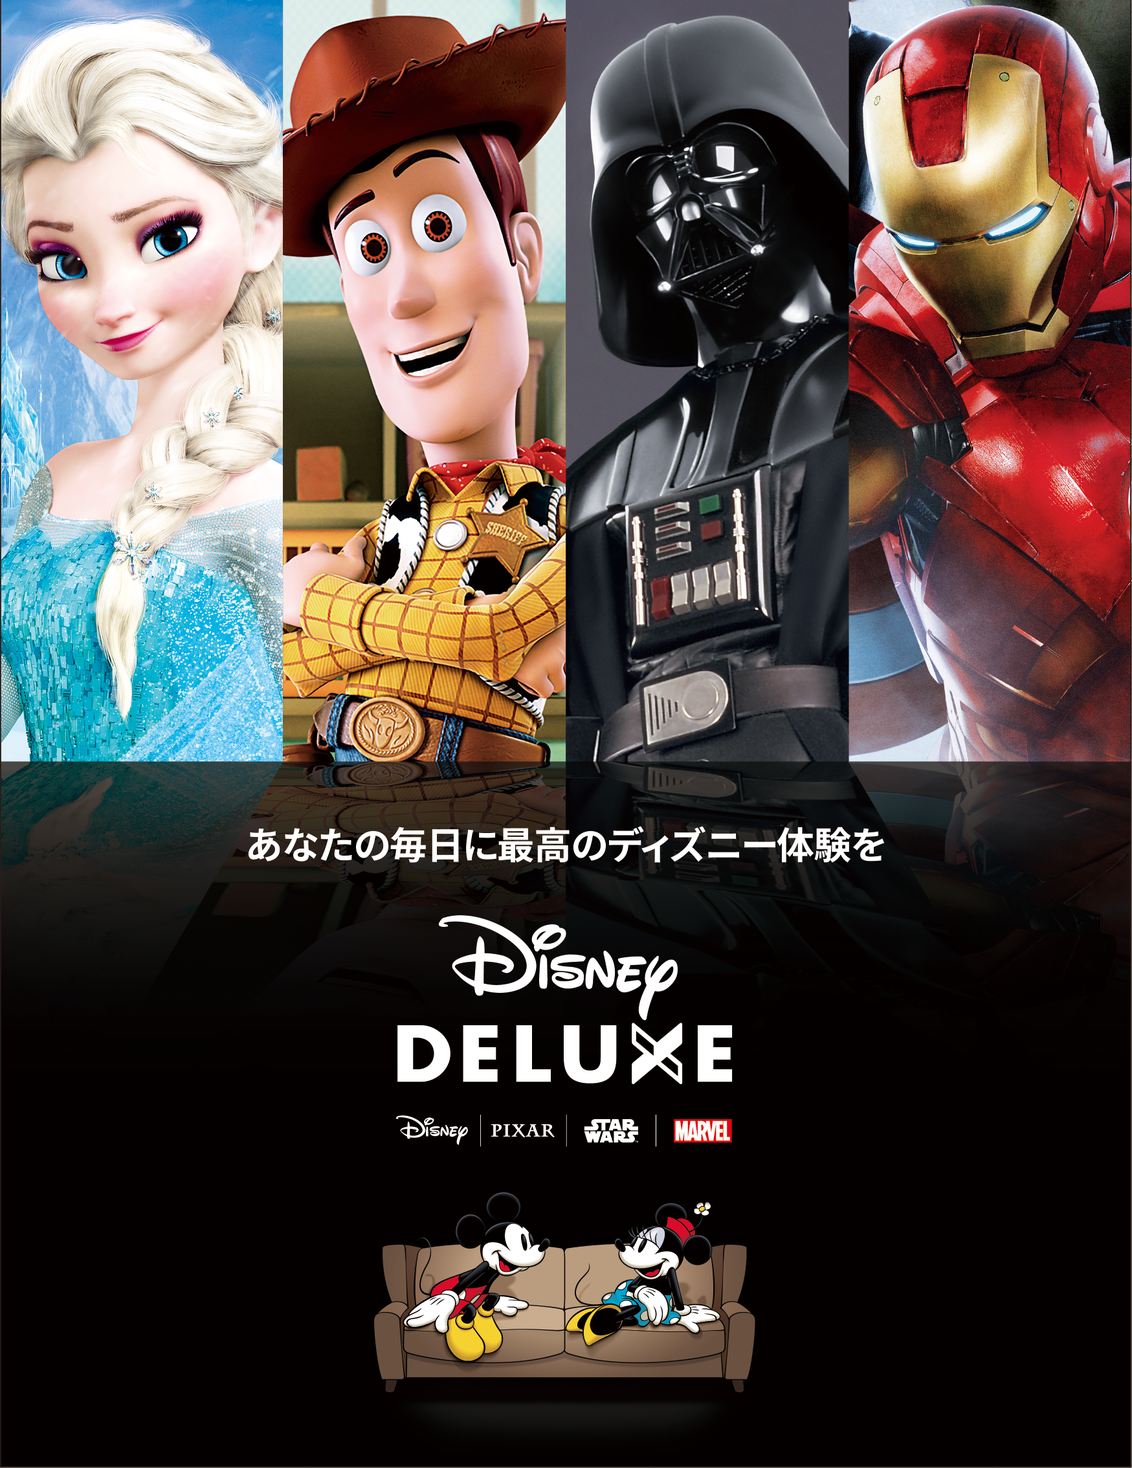 ディズニー公式エンターテイメントサービス Disney Deluxe を提供 ウォルト ディズニー ジャパン株式会社のプレスリリース